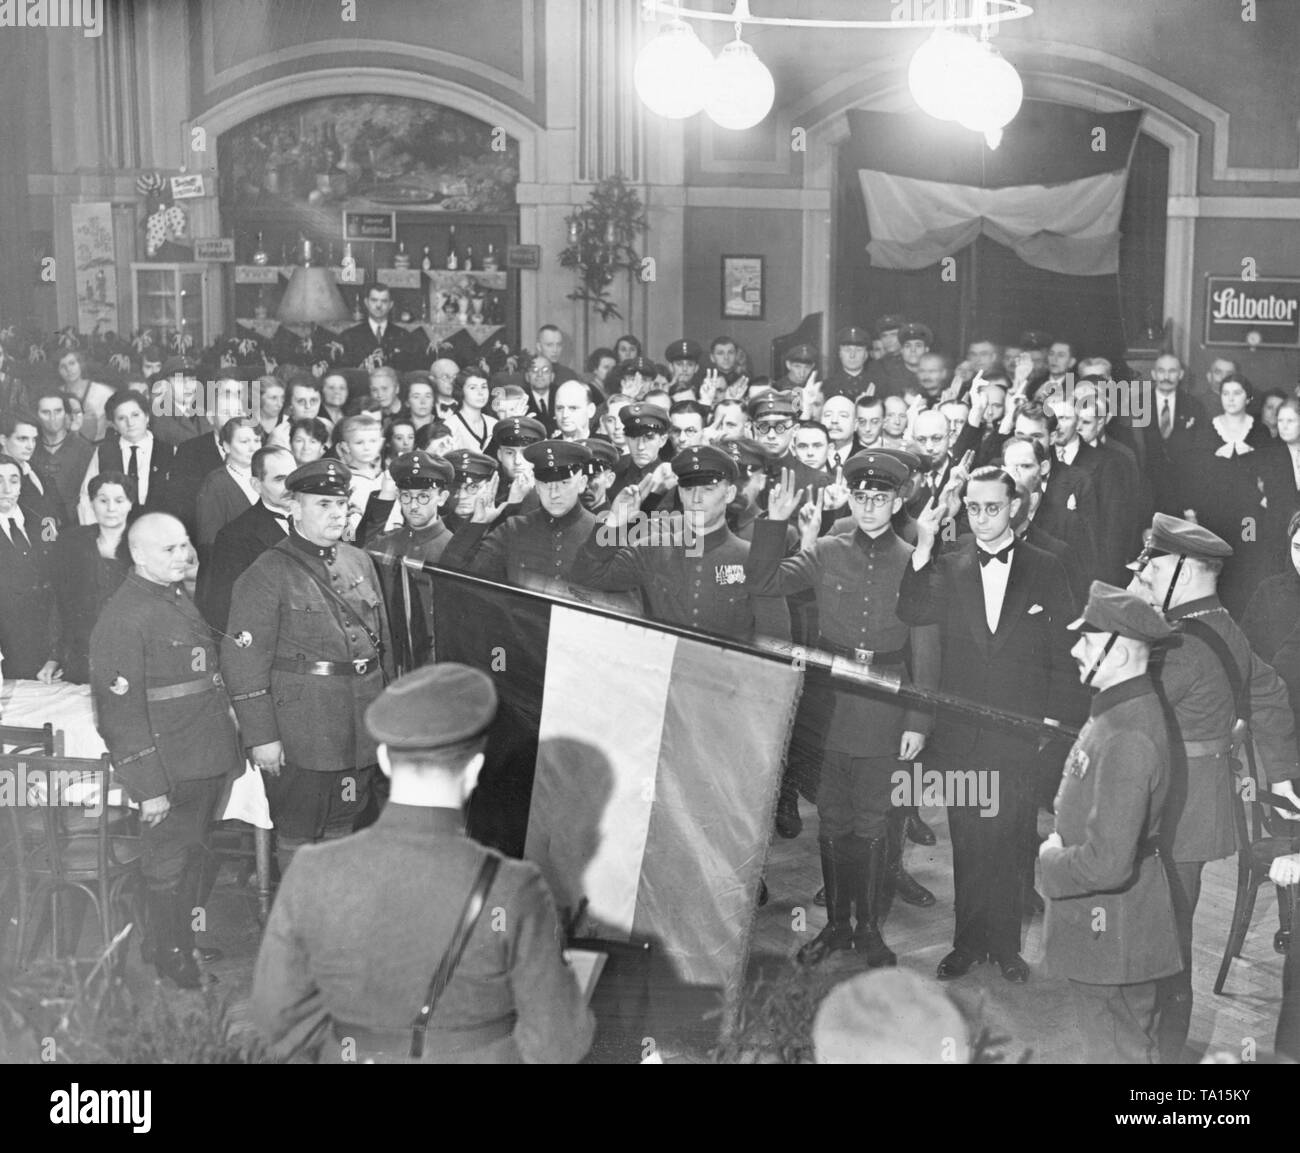 Bei der Vereidigung Zeremonie, die neue Stahlhelm Mitglieder schwören ihren Eid nicht auf der Flagge der Republik, sondern auf den Schwarz-weiß-rote Flagge des Kaiserreiches. Stockfoto